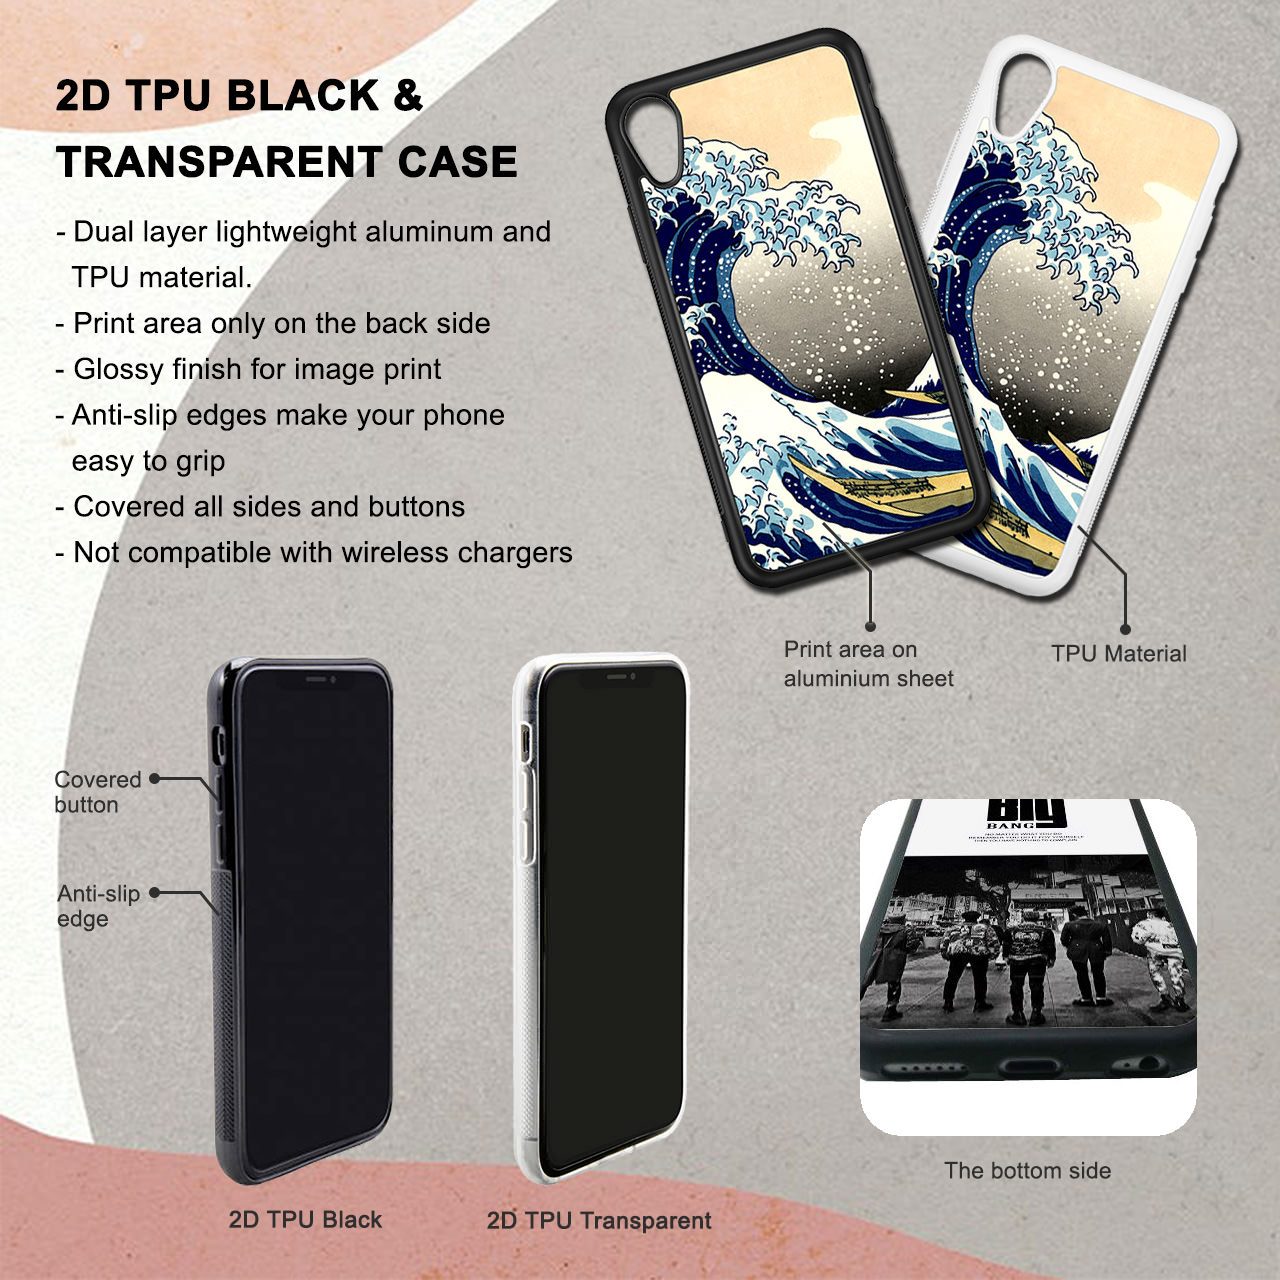 Painting Zebra iPhone 6/6S Case